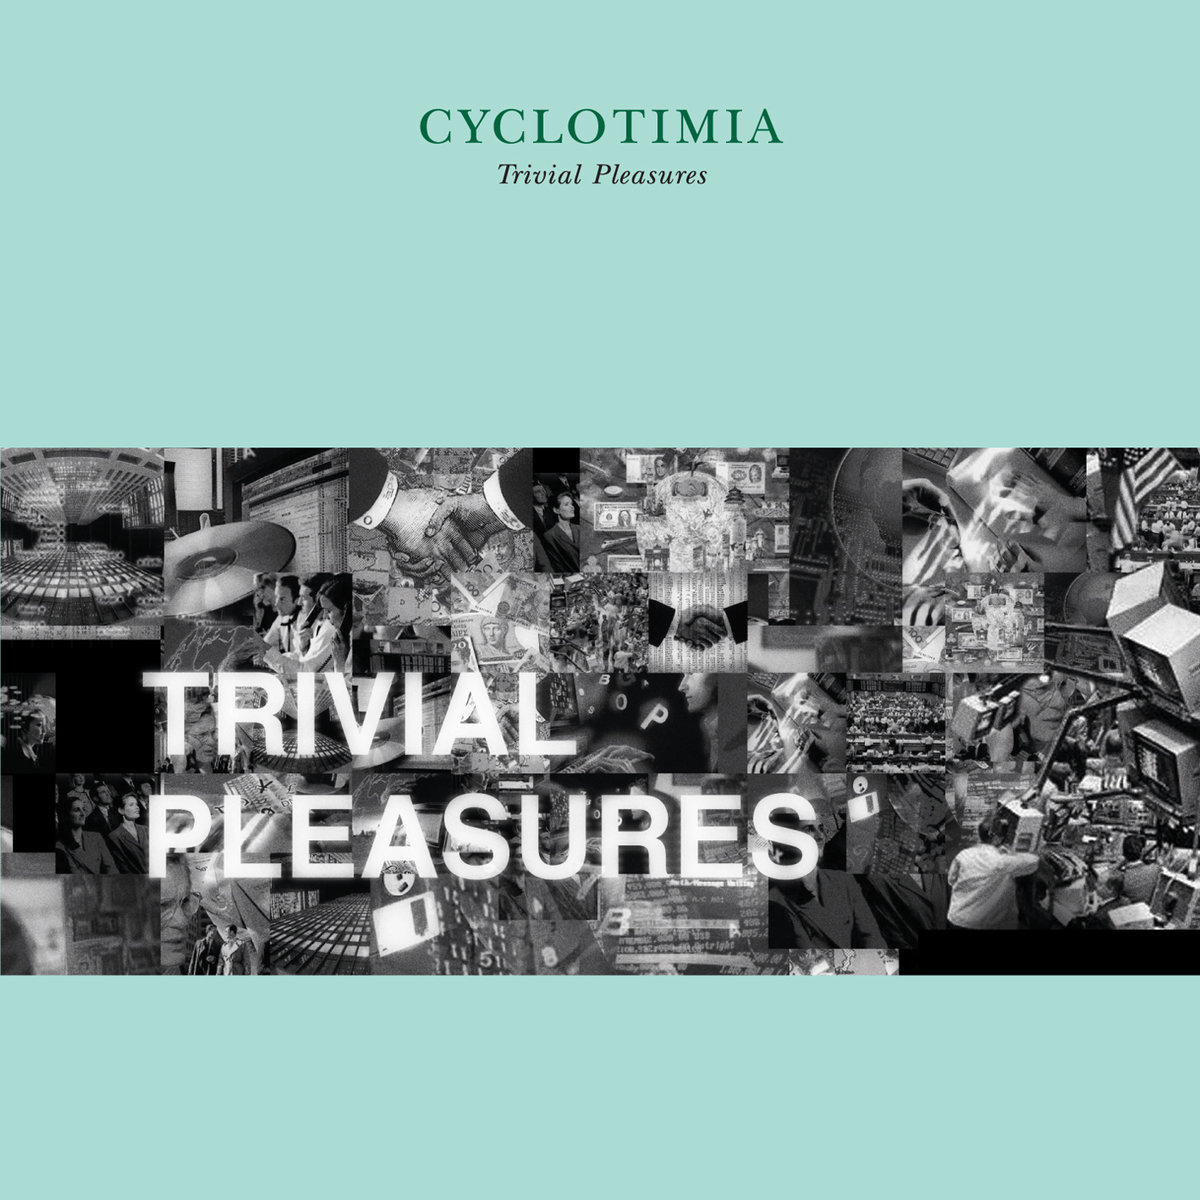 Cyclotimia – Trivial Pleasures